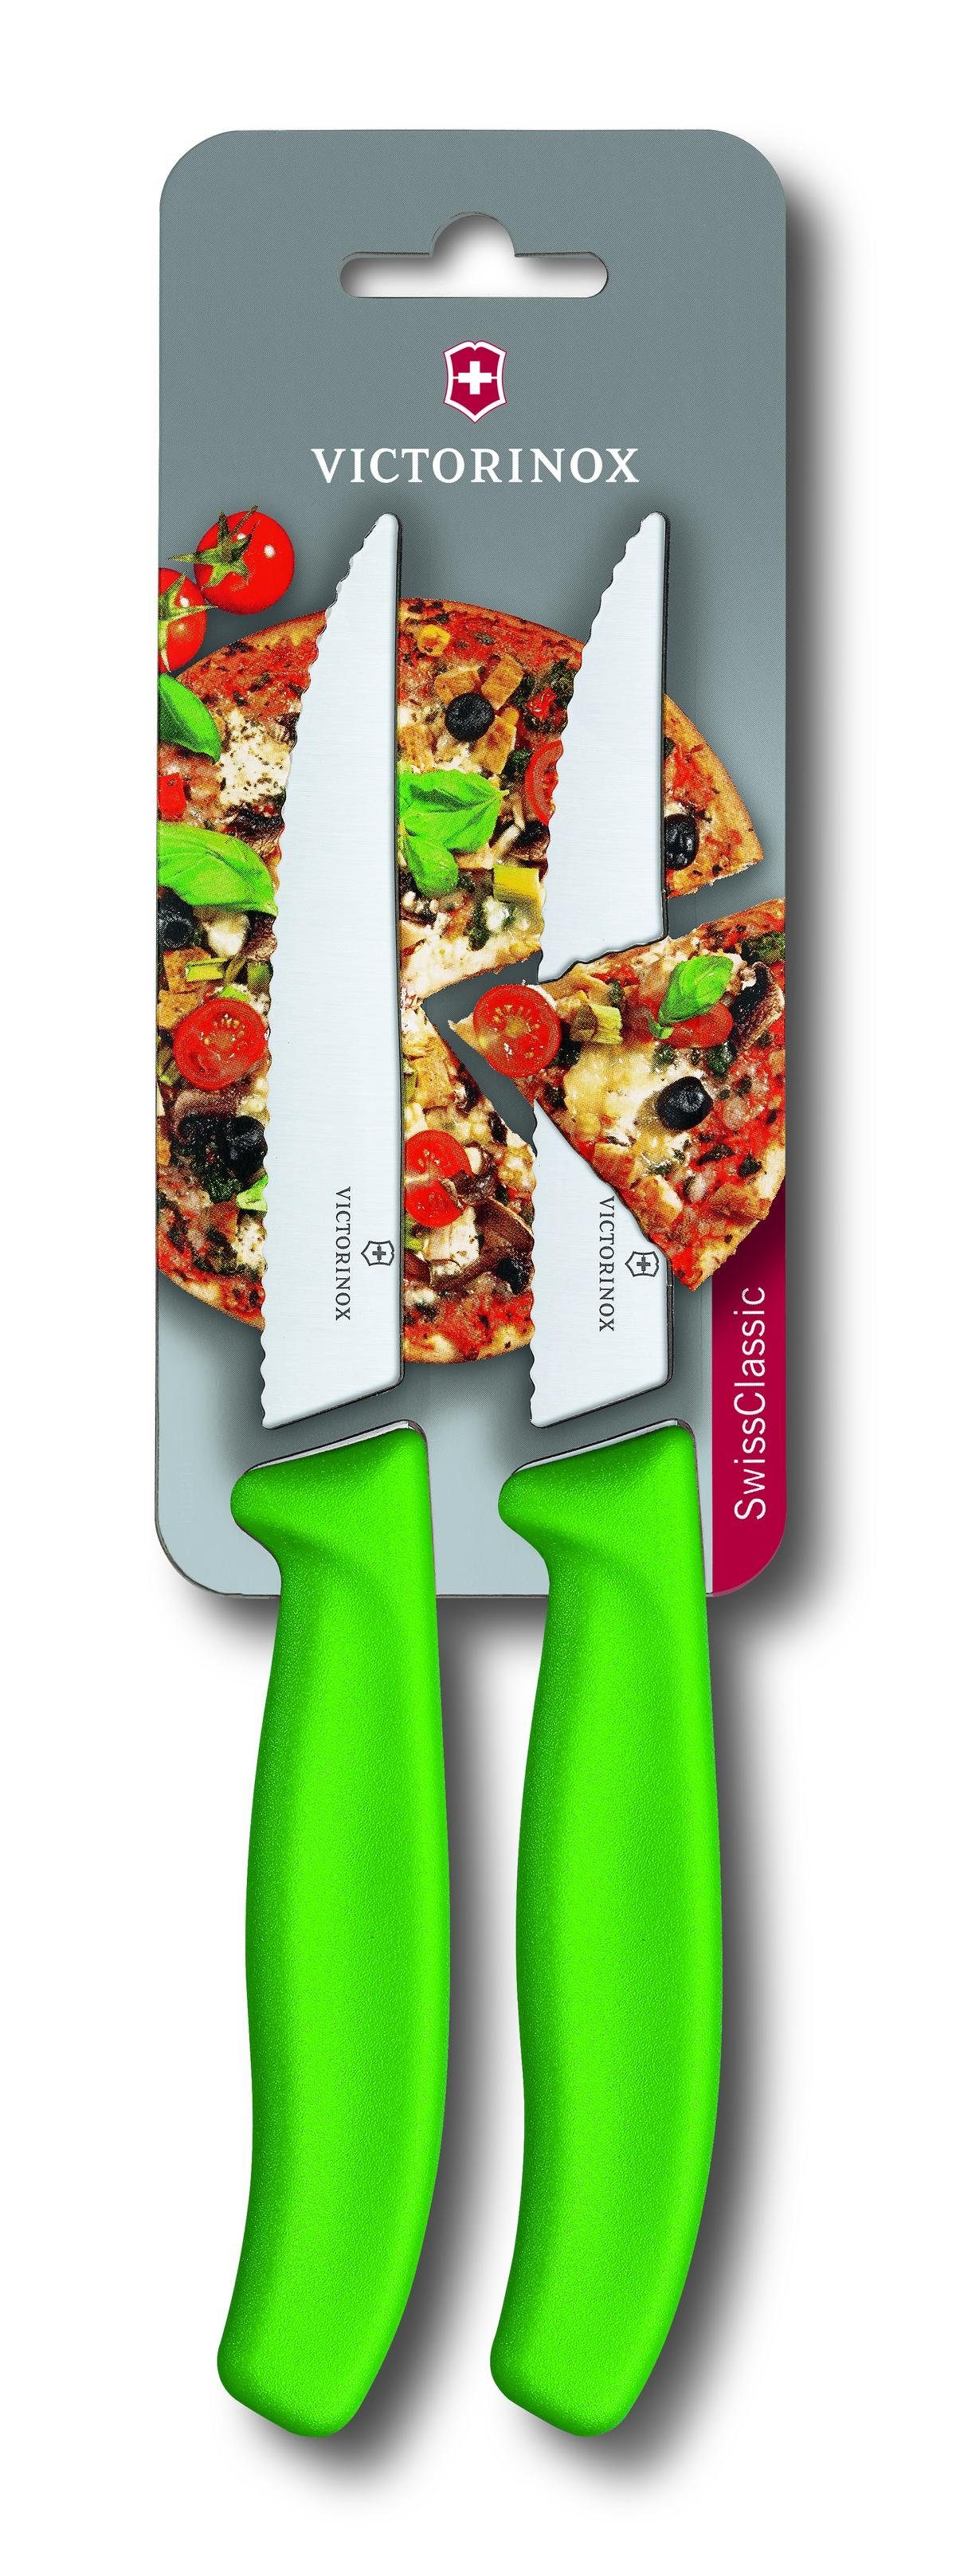 Pizzamesser, 2 Wellen, auf grün, Victorinox mit SwissClassic Blister Taschenmesser